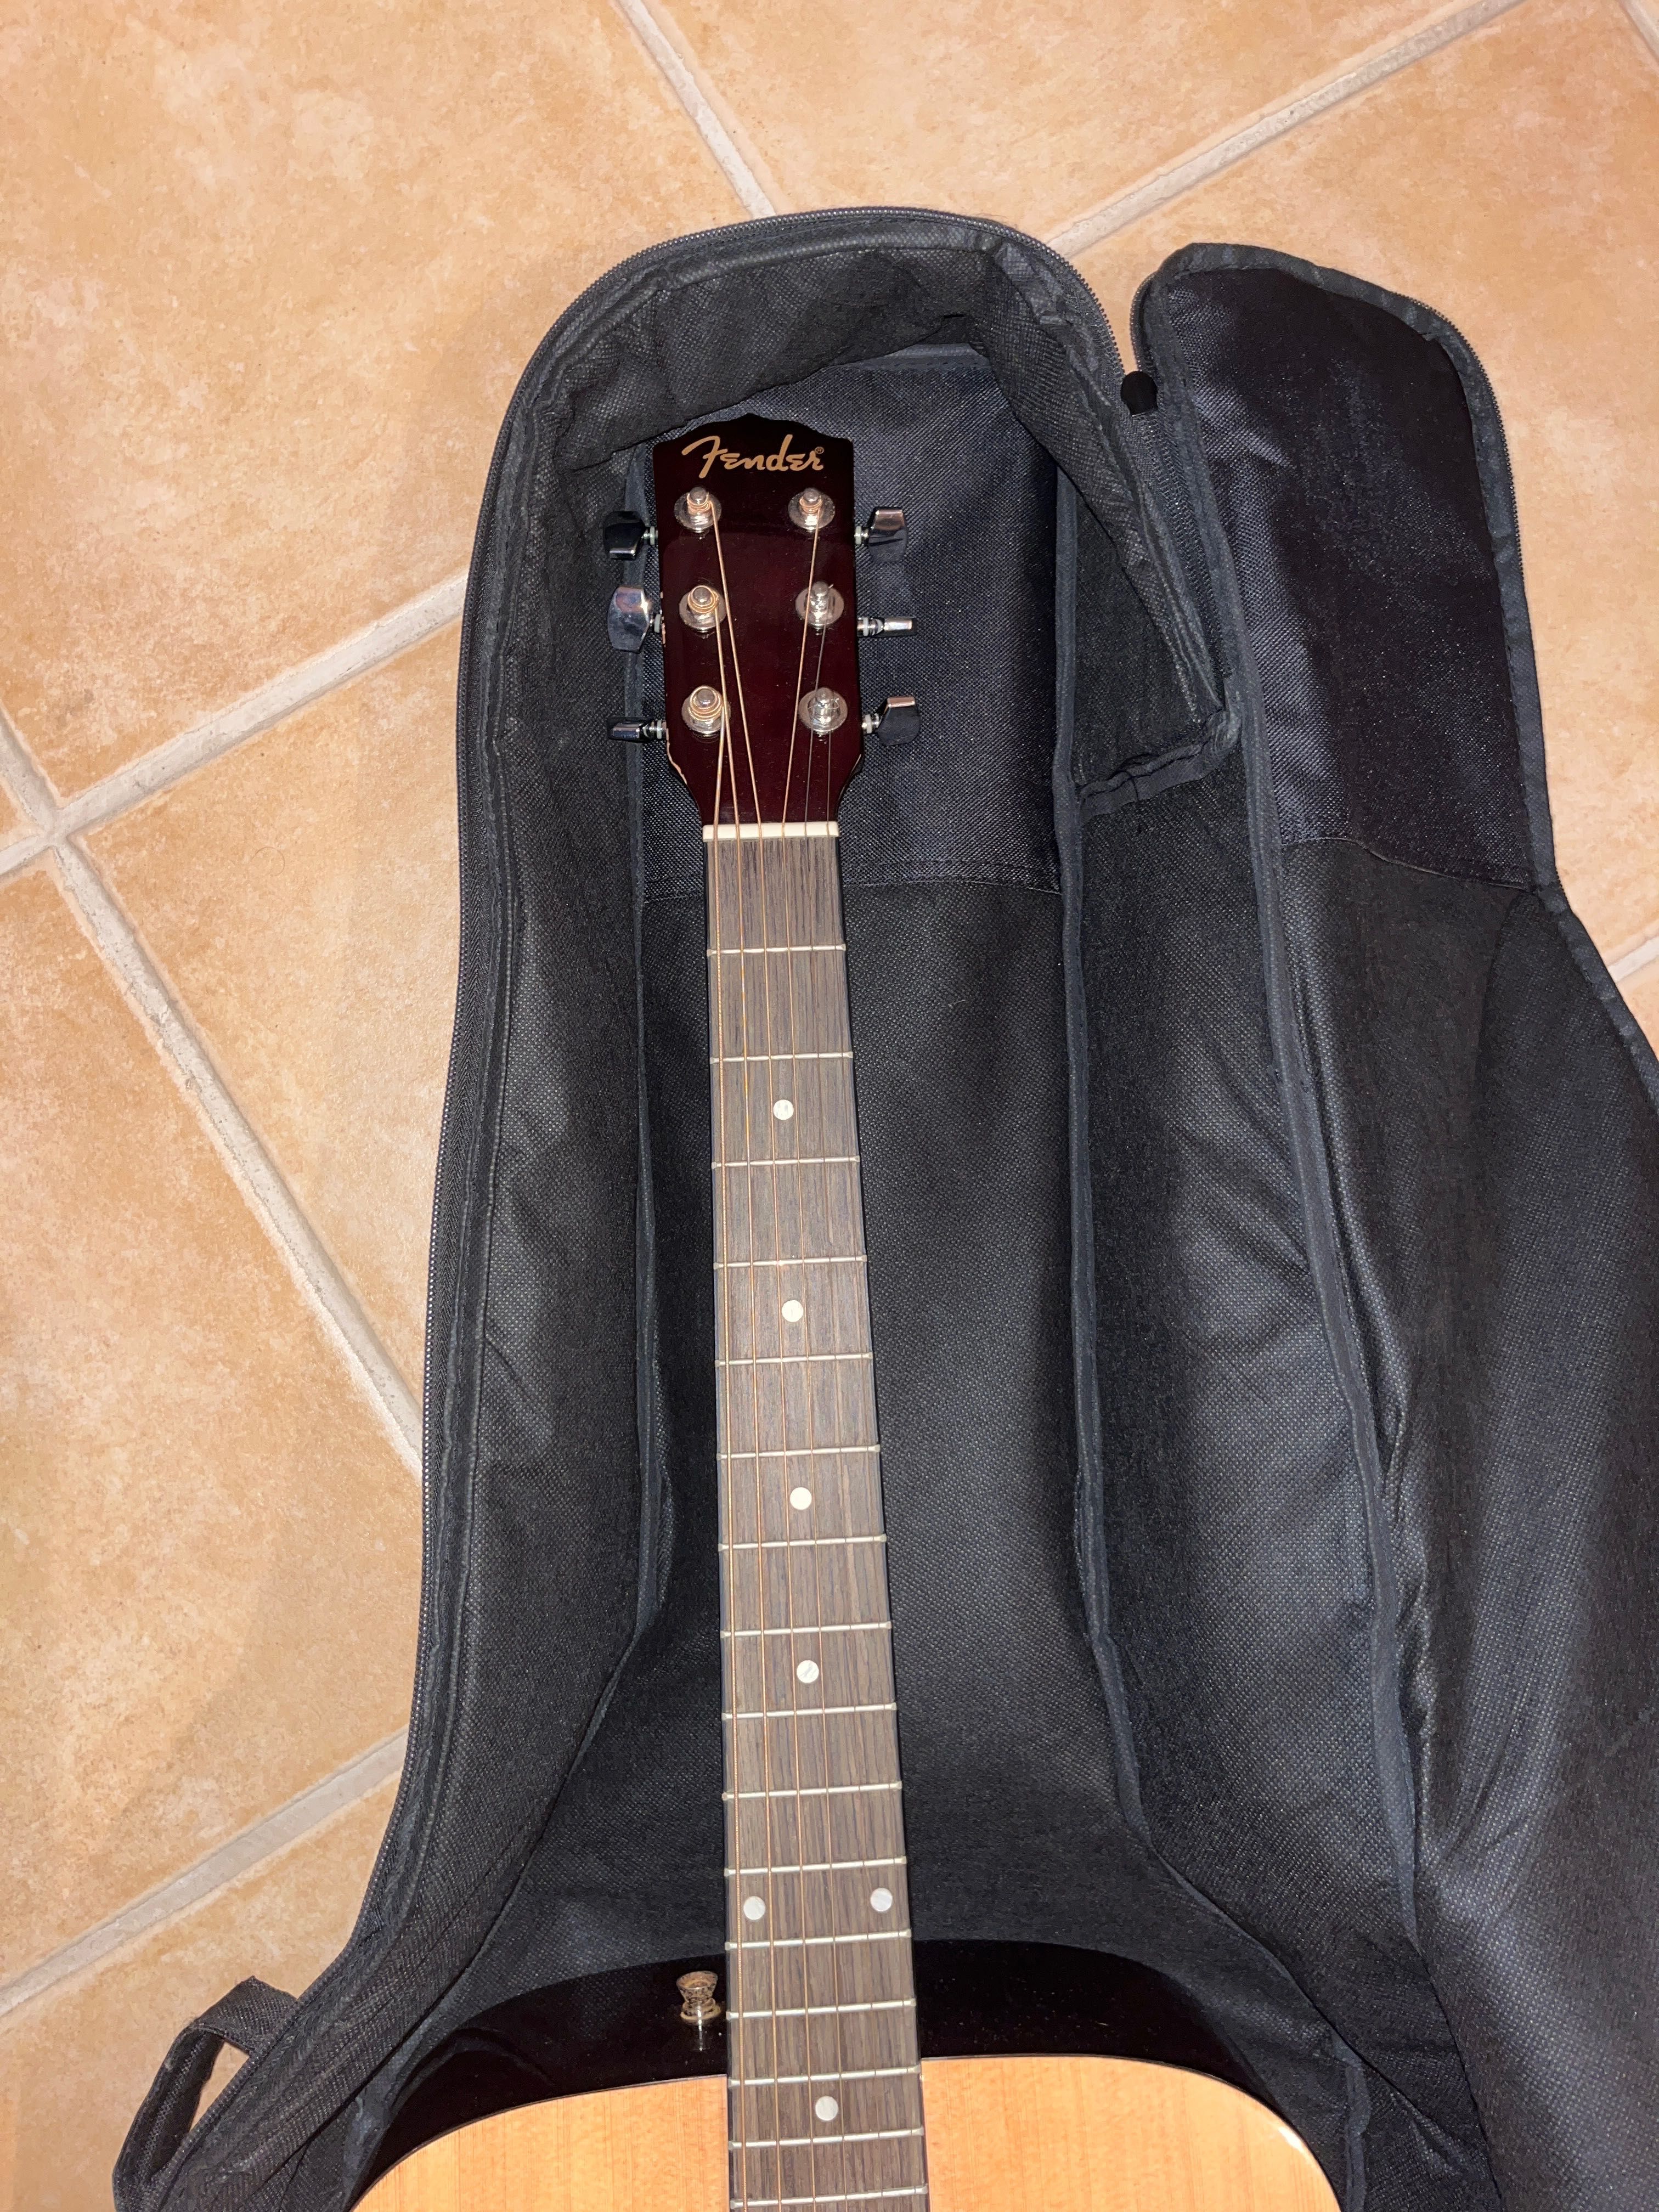 Guitarra Fender semi nova com saco e palhetas